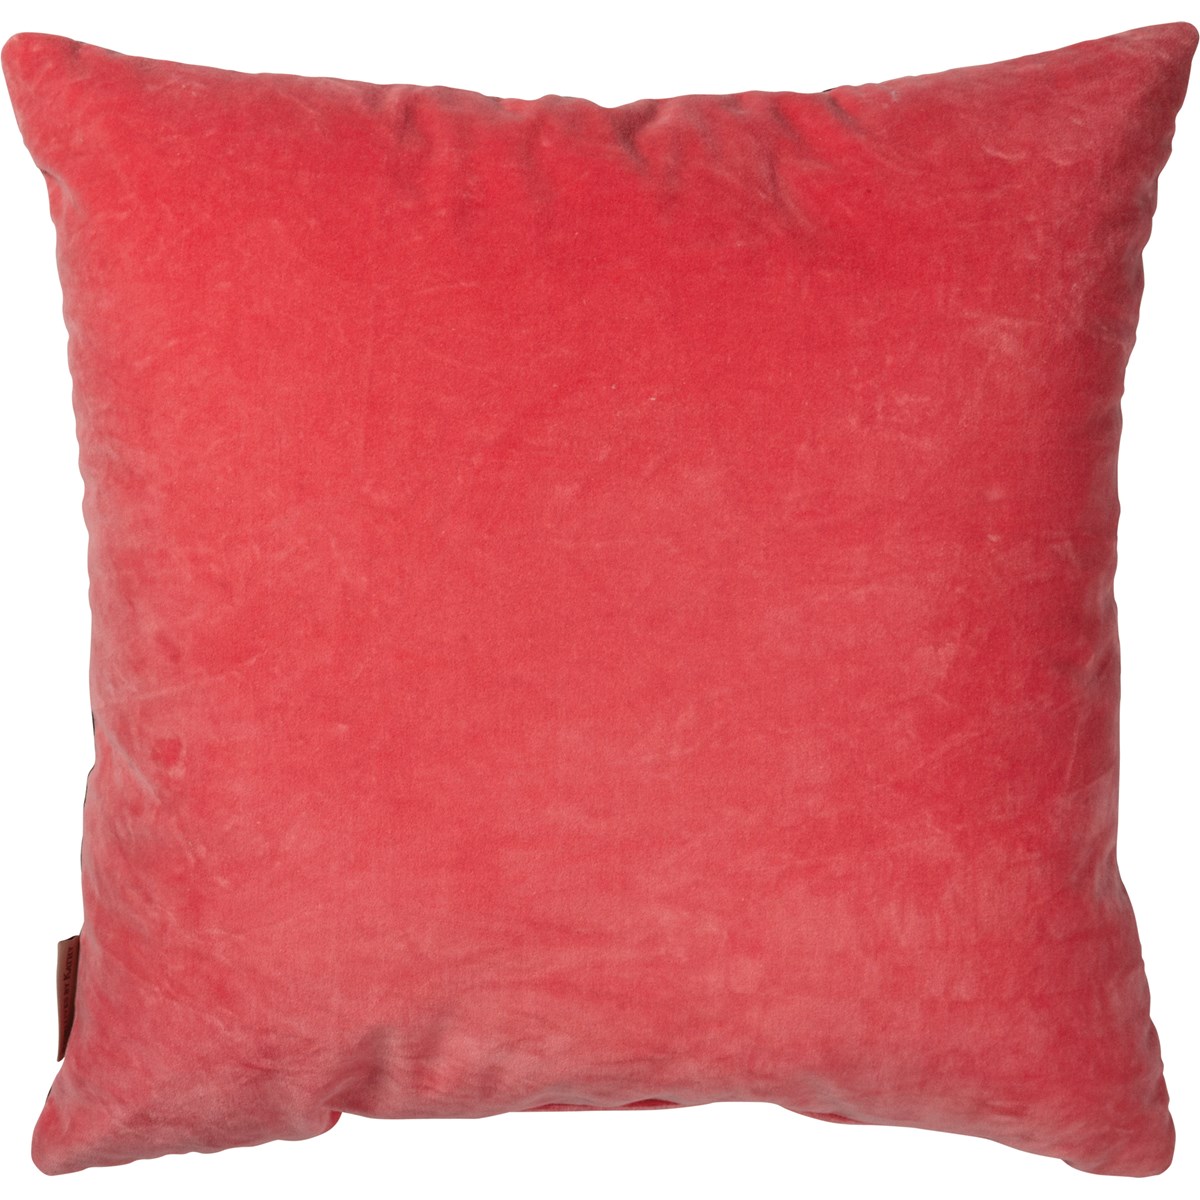 Make Your Own Magic Pillow - Cotton, Velvet